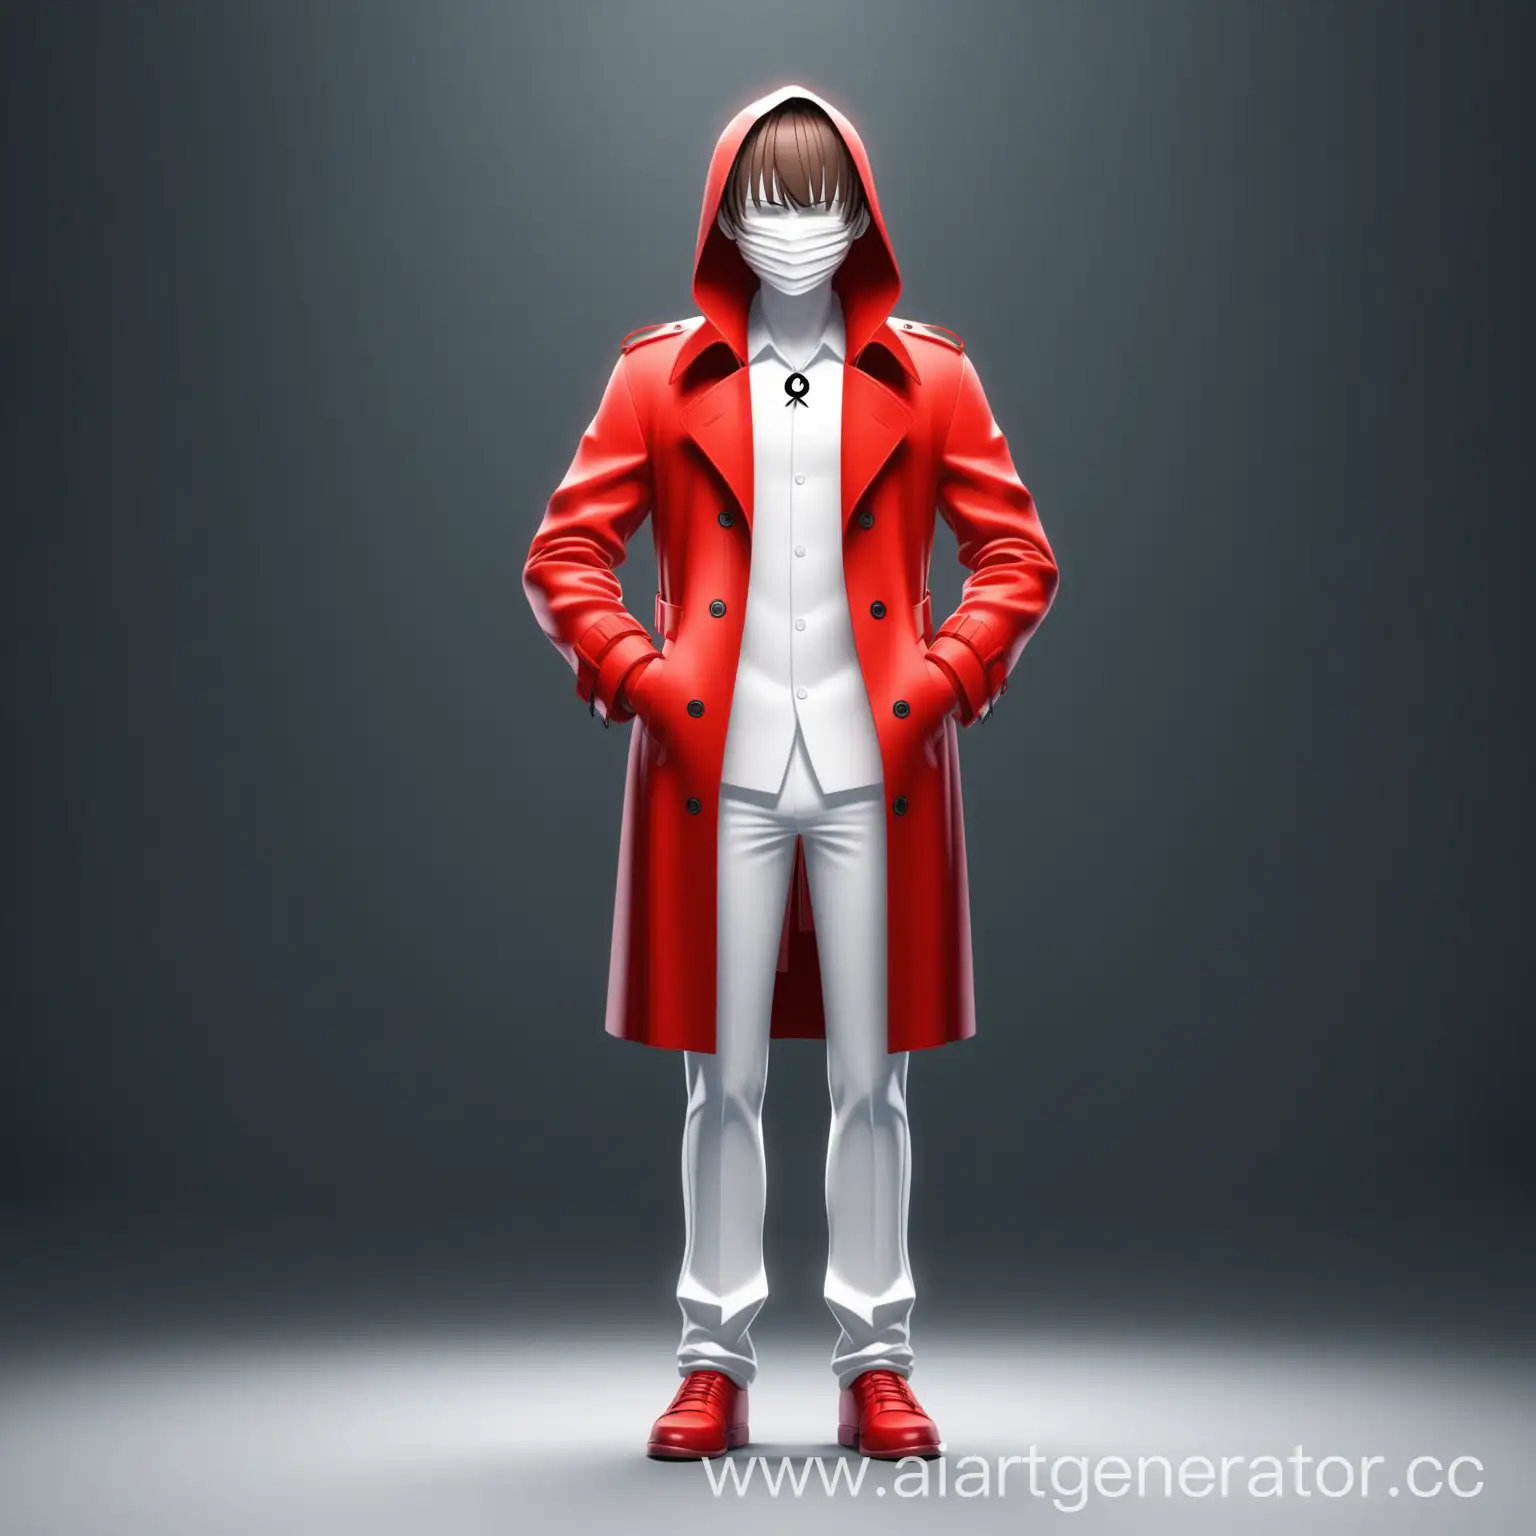 Аниме персонаж  Человек в полный рост , коричневые волосы на лице , прическа по бокам челка которое закрывает лицо, одежда красное пальто со знаком клинка , белая кожа. 3д